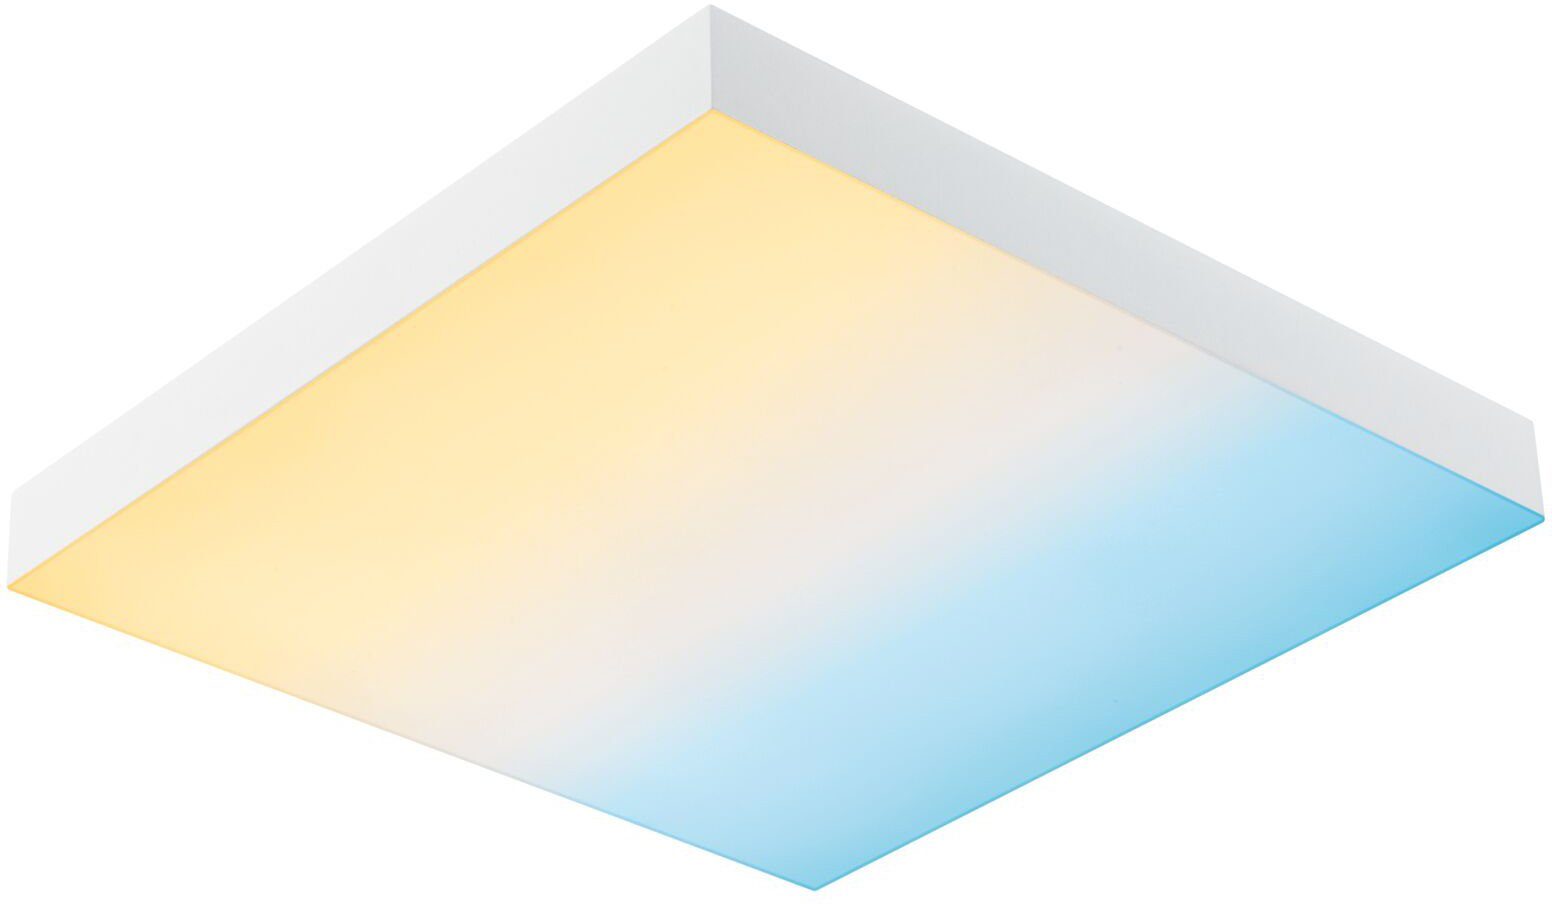 fest Tageslichtweiß Panel Rainbow, Velora integriert, LED LED Paulmann